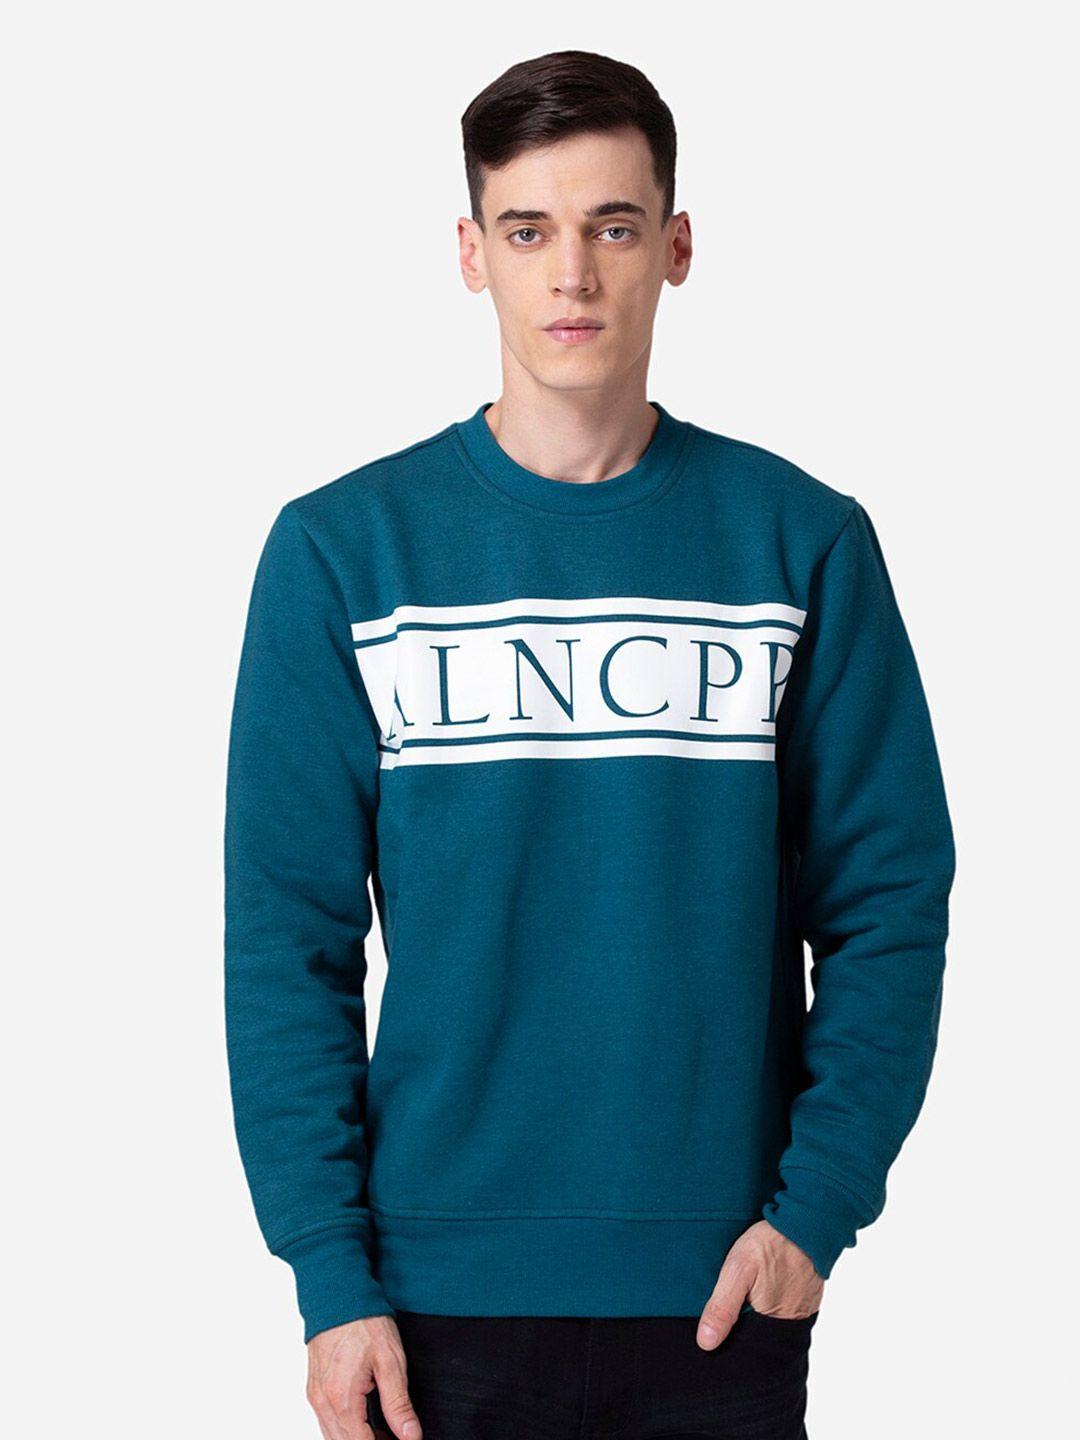 allen-cooper-men-printed-cotton-sweatshirt